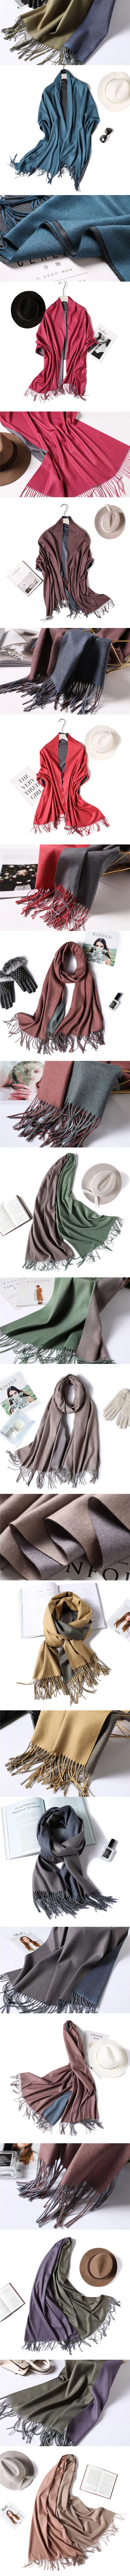 Зимний шарф женский кашемировый шарф осенние длинные женские шали и шарфы одеяло с кисточками обёрточная мягкая теплая палантин